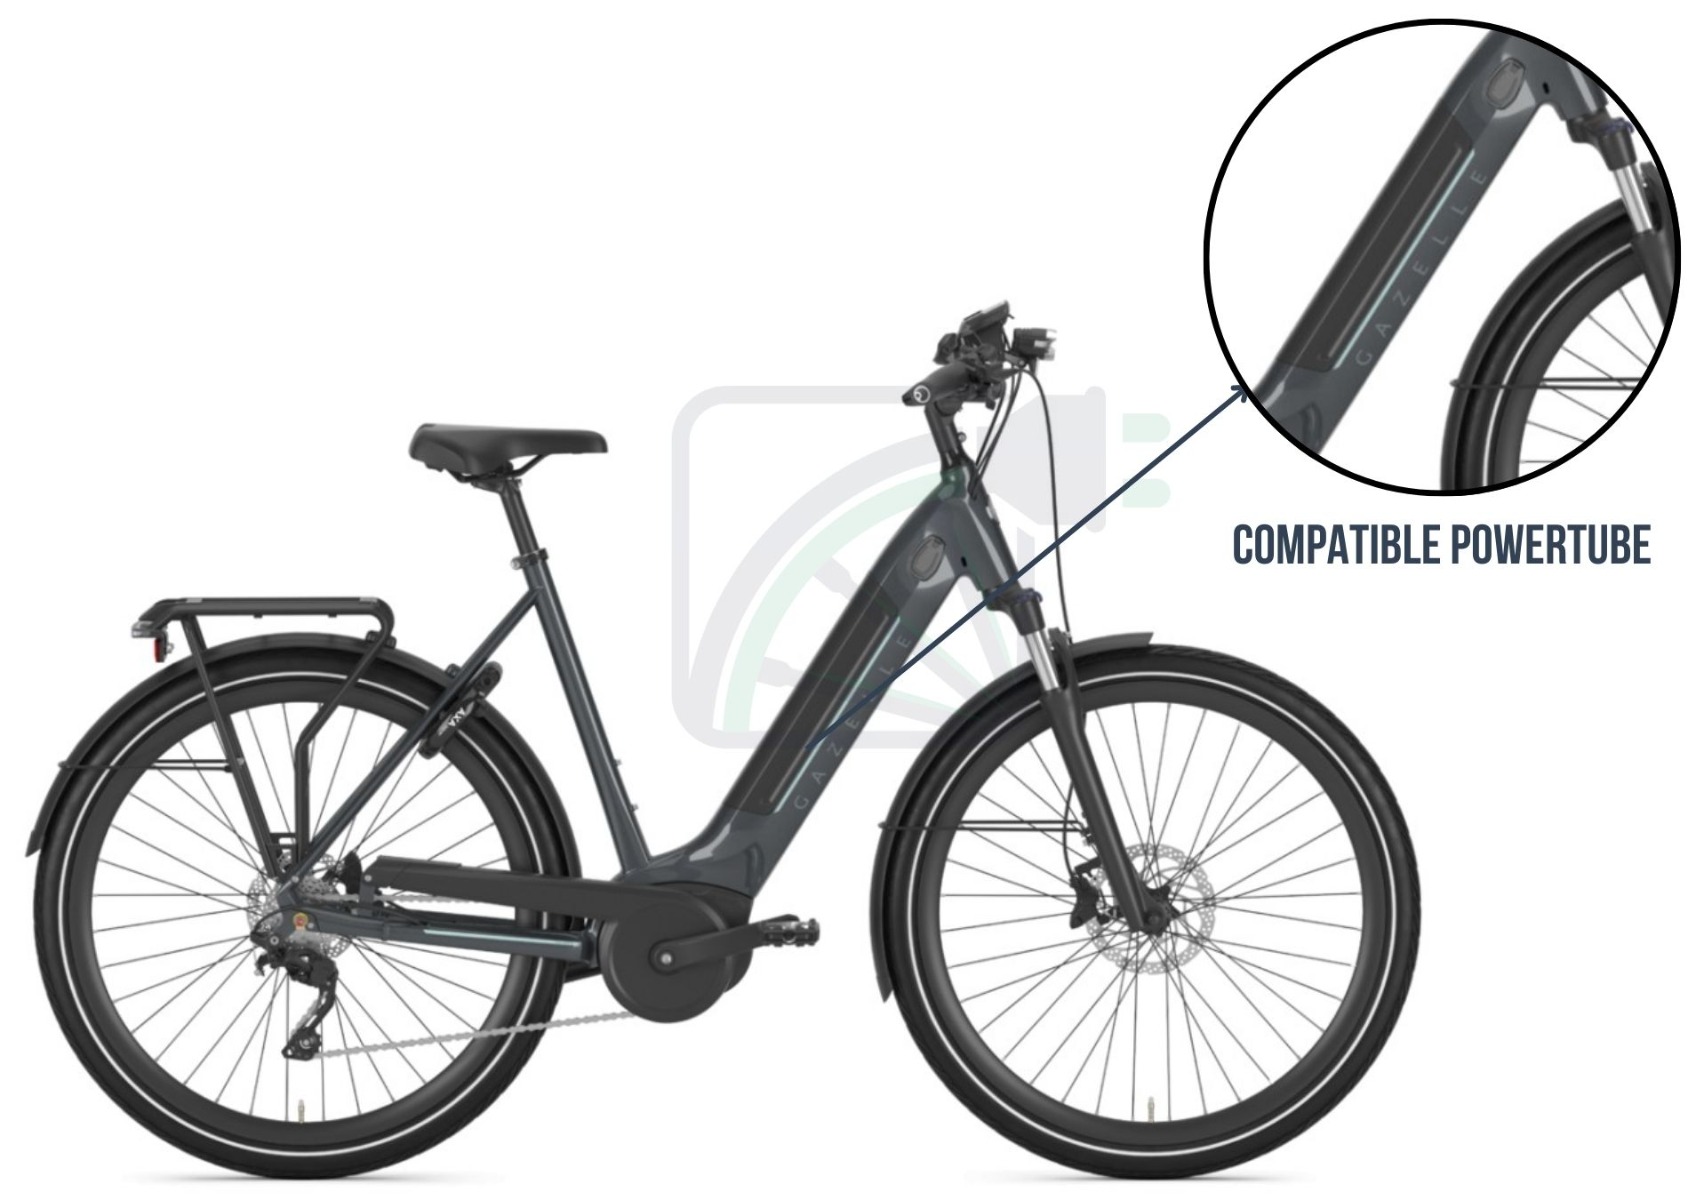 Image d'un vélo électrique. Une partie de l'image est agrandie et la batterie du vélo est mise en évidence. Les batteries possibles pour ce vélo électrique sont également mentionnées. Ce sont des Powertubes compatibles avec Bosch.